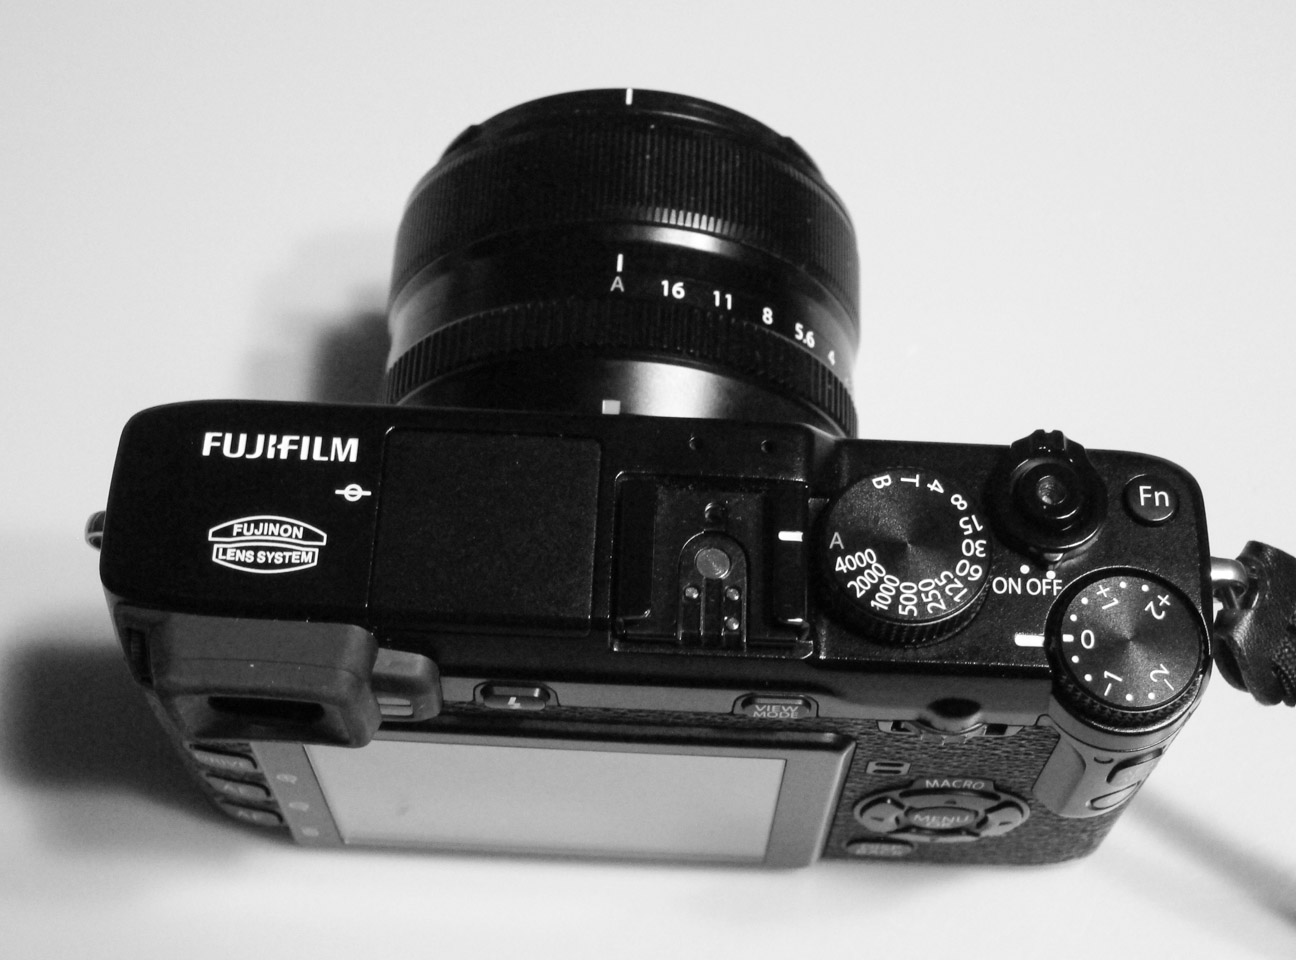 Fujifilm X-E1 controls